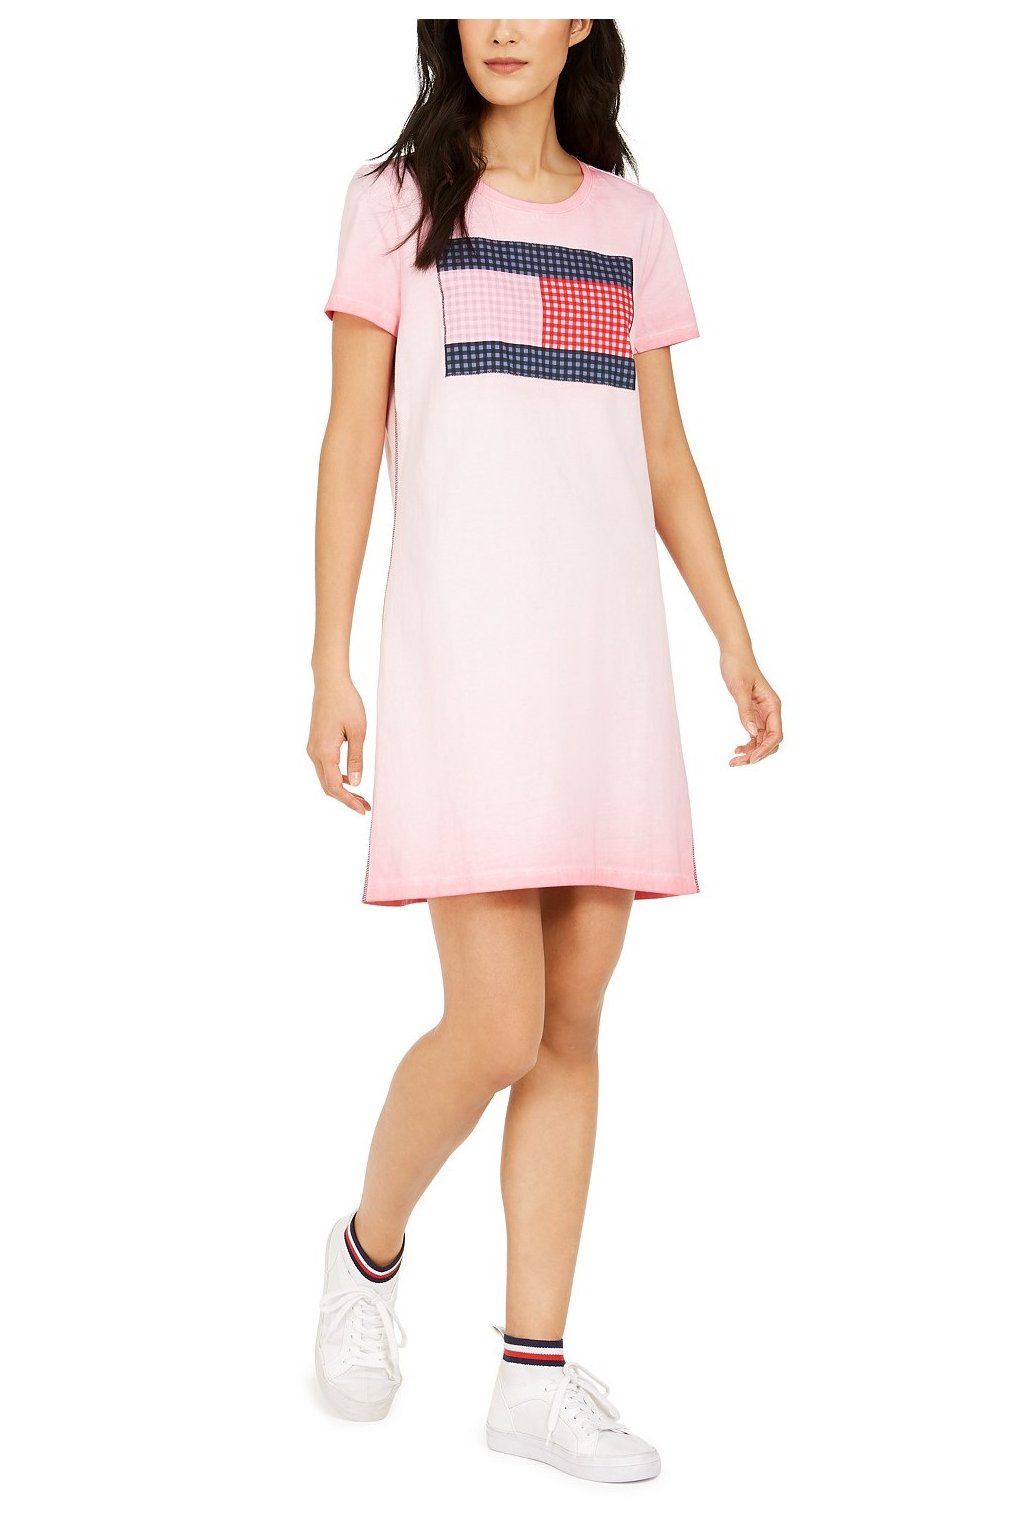 Šaty Tommy Hilfiger Cotton Flag Dress růžové